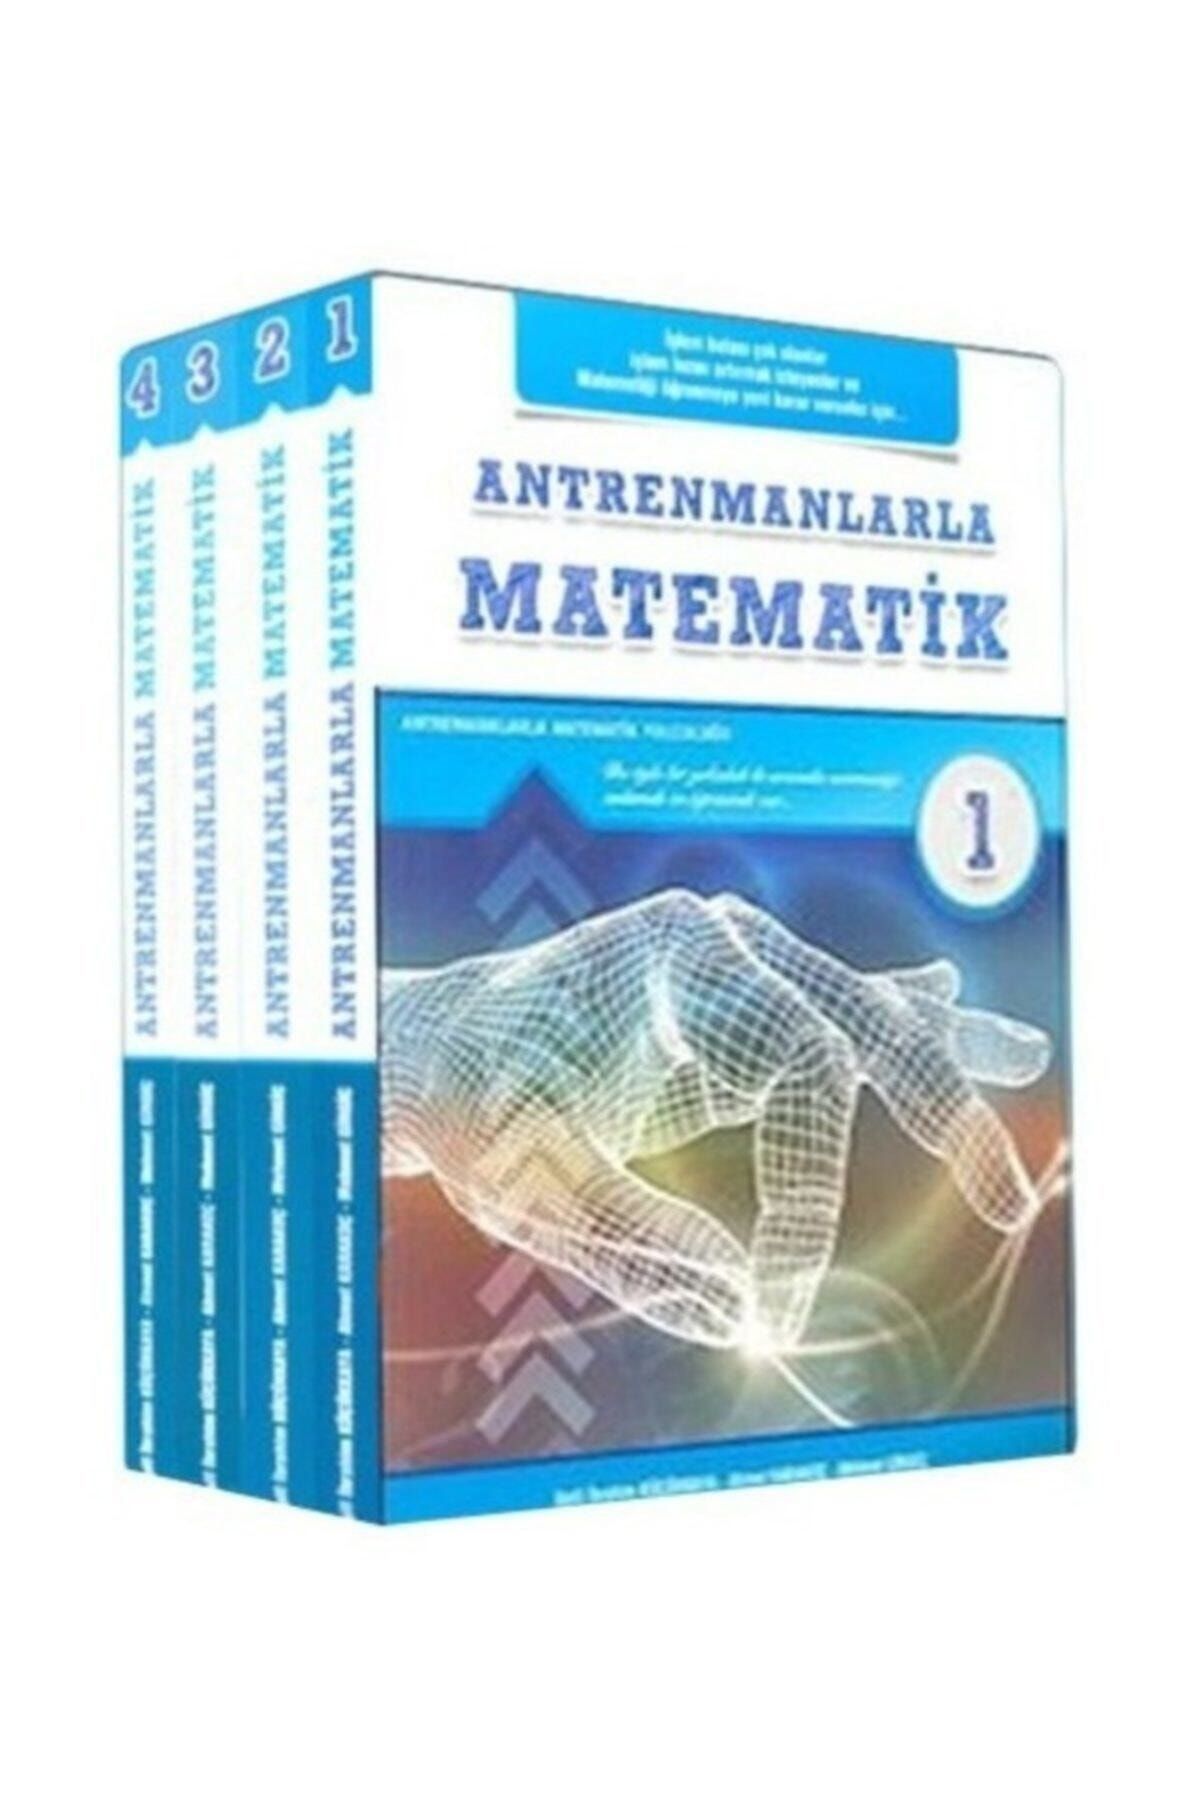 Antrenman Yayınları Antrenmanlarla Matematik (1-2-3-4 Kitap Takım) Nunkkm12